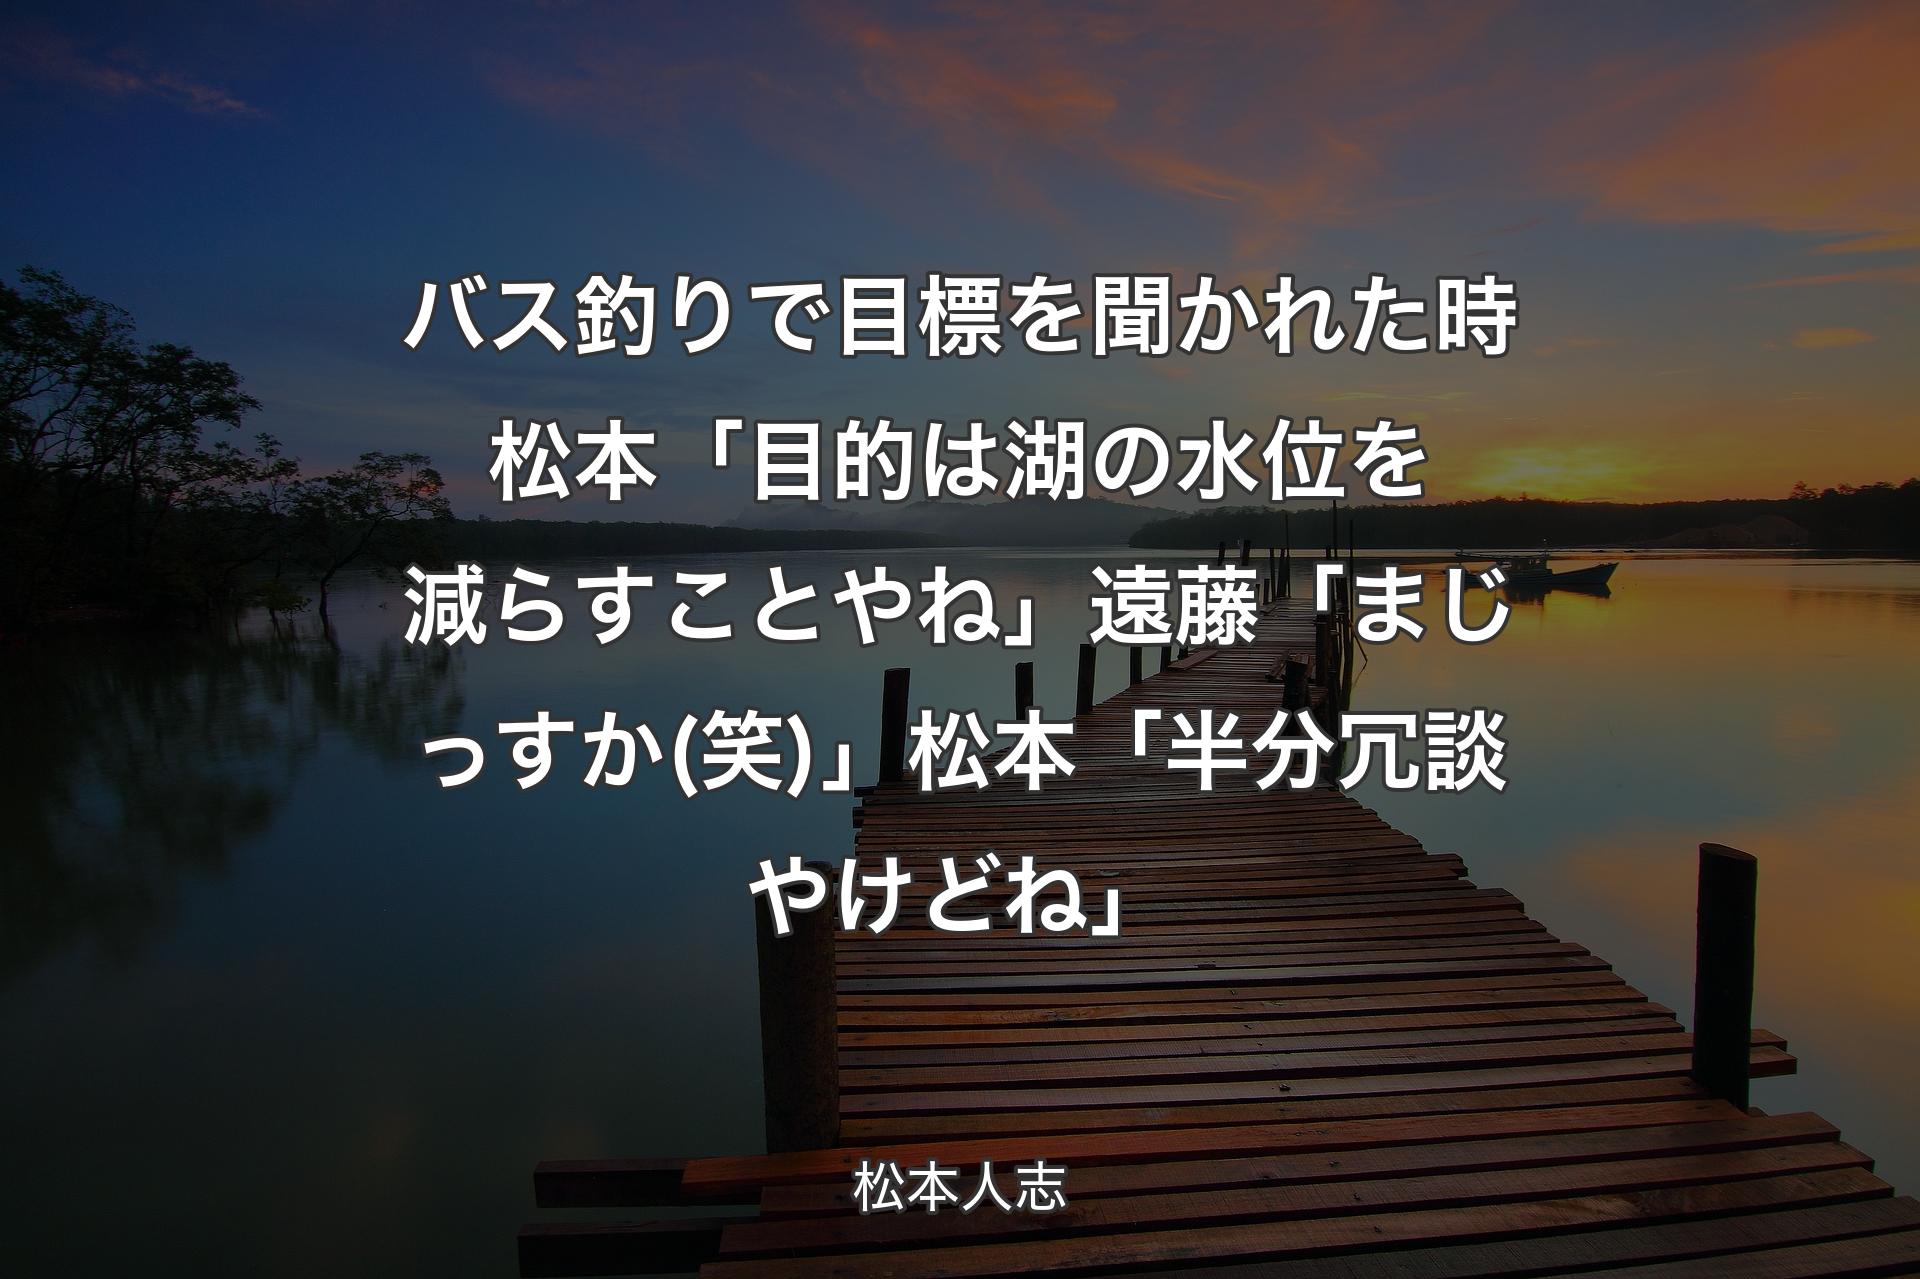 【背景3】バス釣りで目標を聞かれた時 松本「目的は湖の水位を減らすことやね」遠藤「まじっすか(笑)」松本「半分冗談やけどね」 - 松本人志